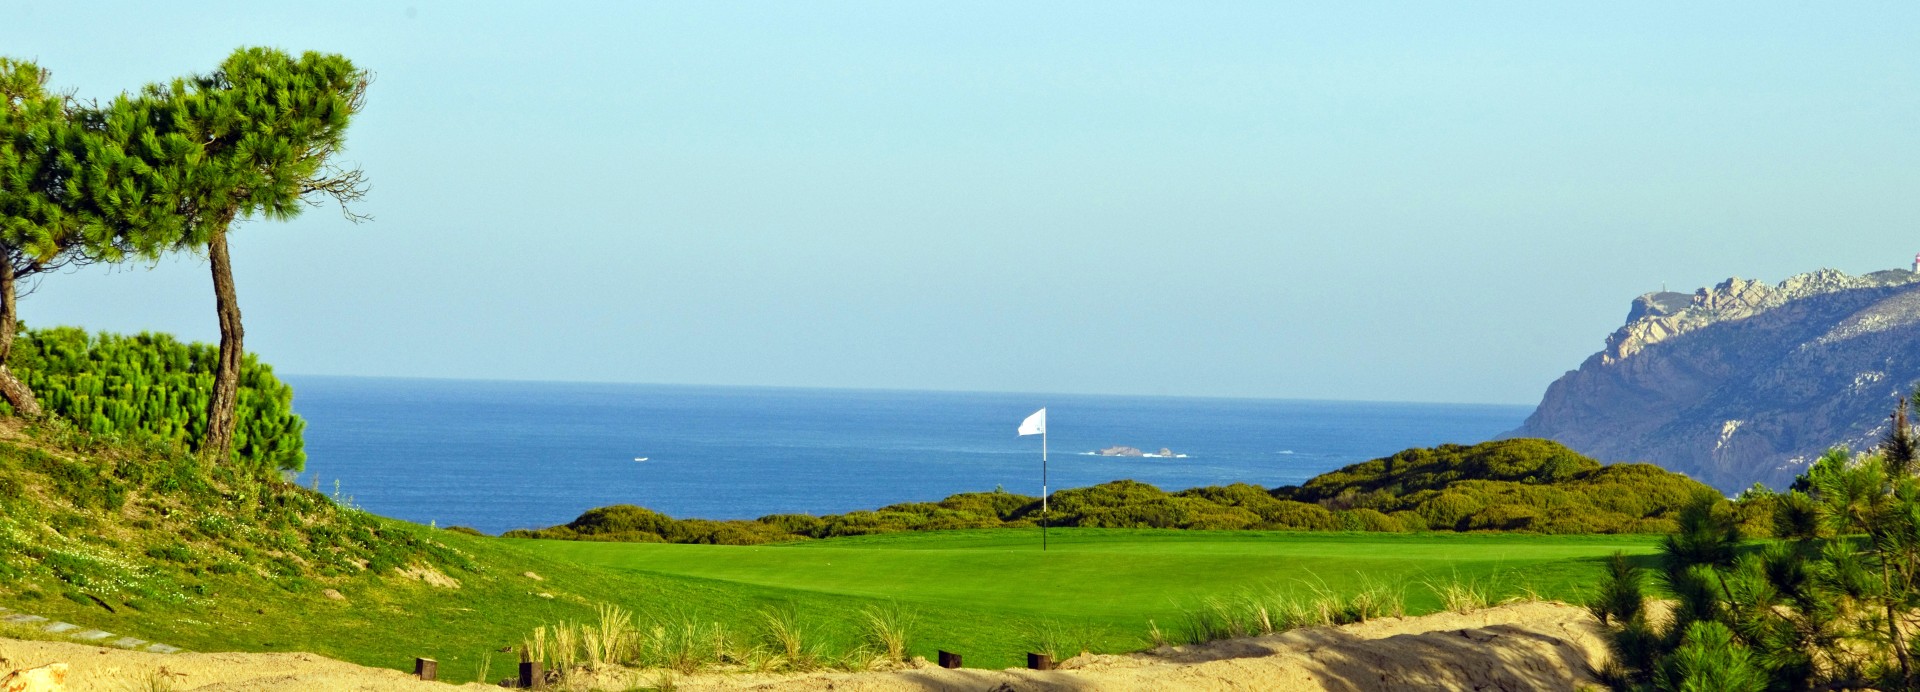 Oitavos Dunes Golf Course  | Golfové zájezdy, golfová dovolená, luxusní golf